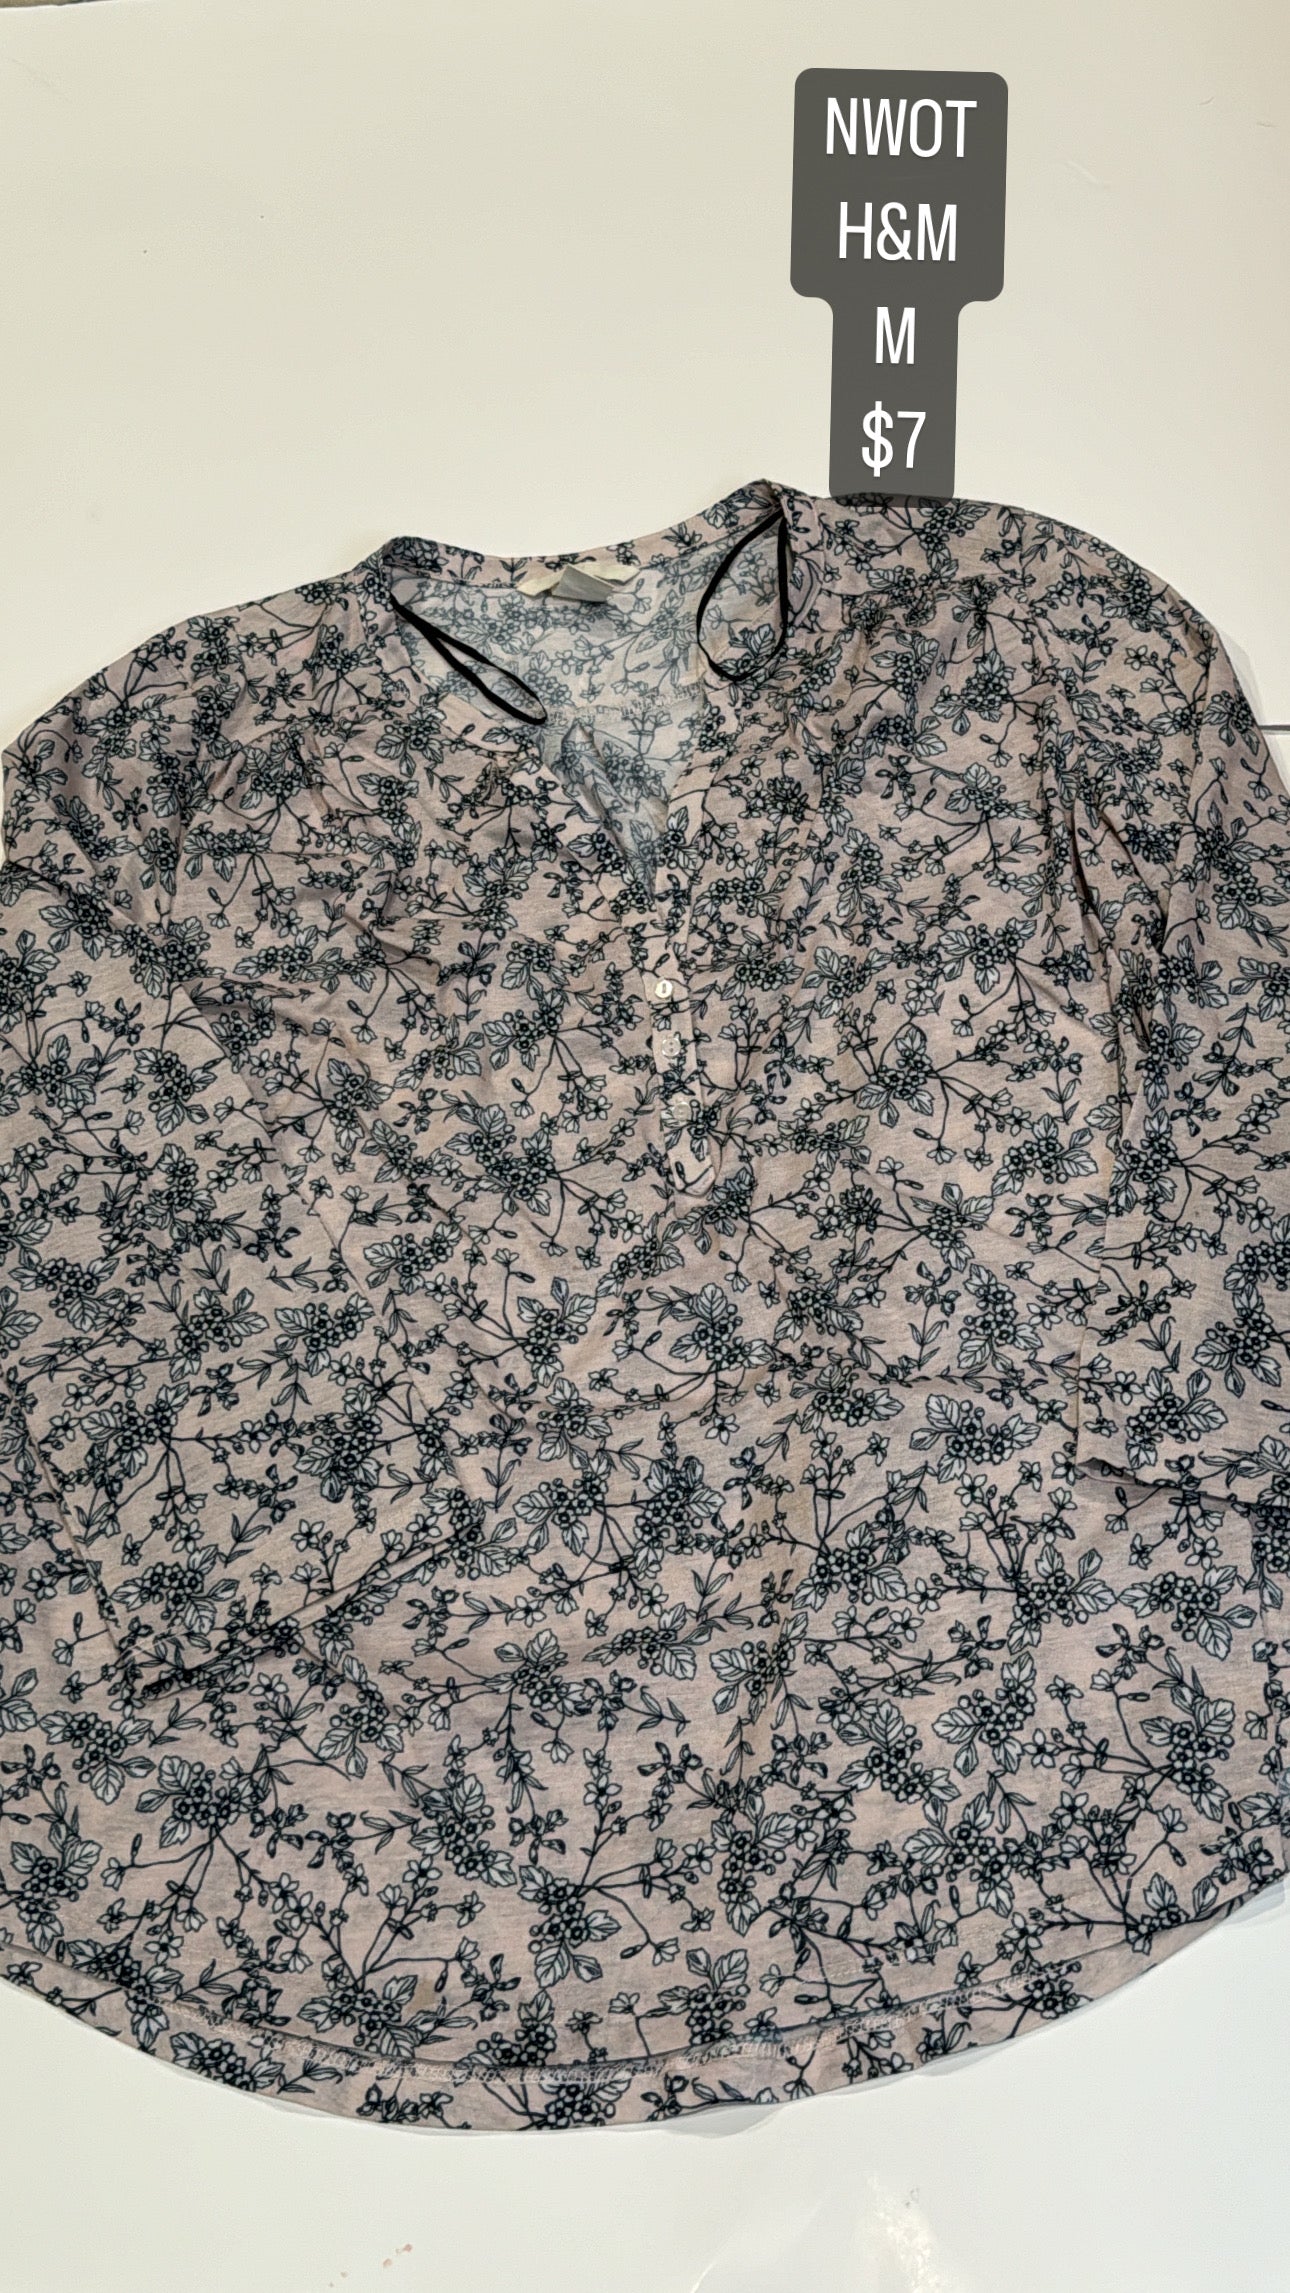 H&M M floral blouse